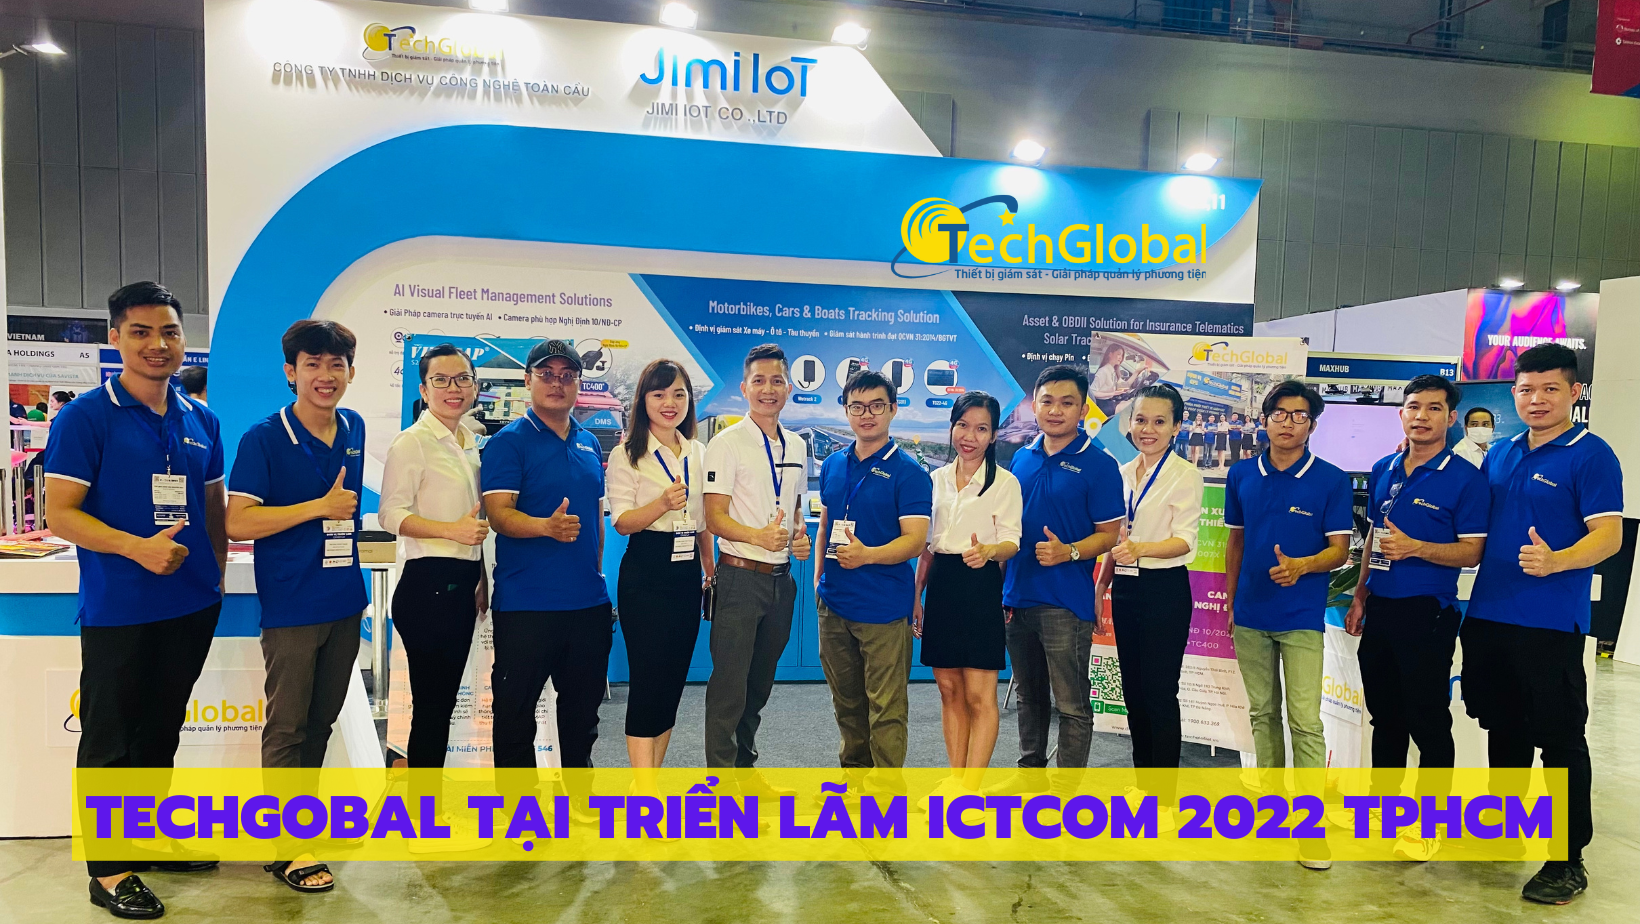 2019/Tecglobal_tại_ITC_2022.png